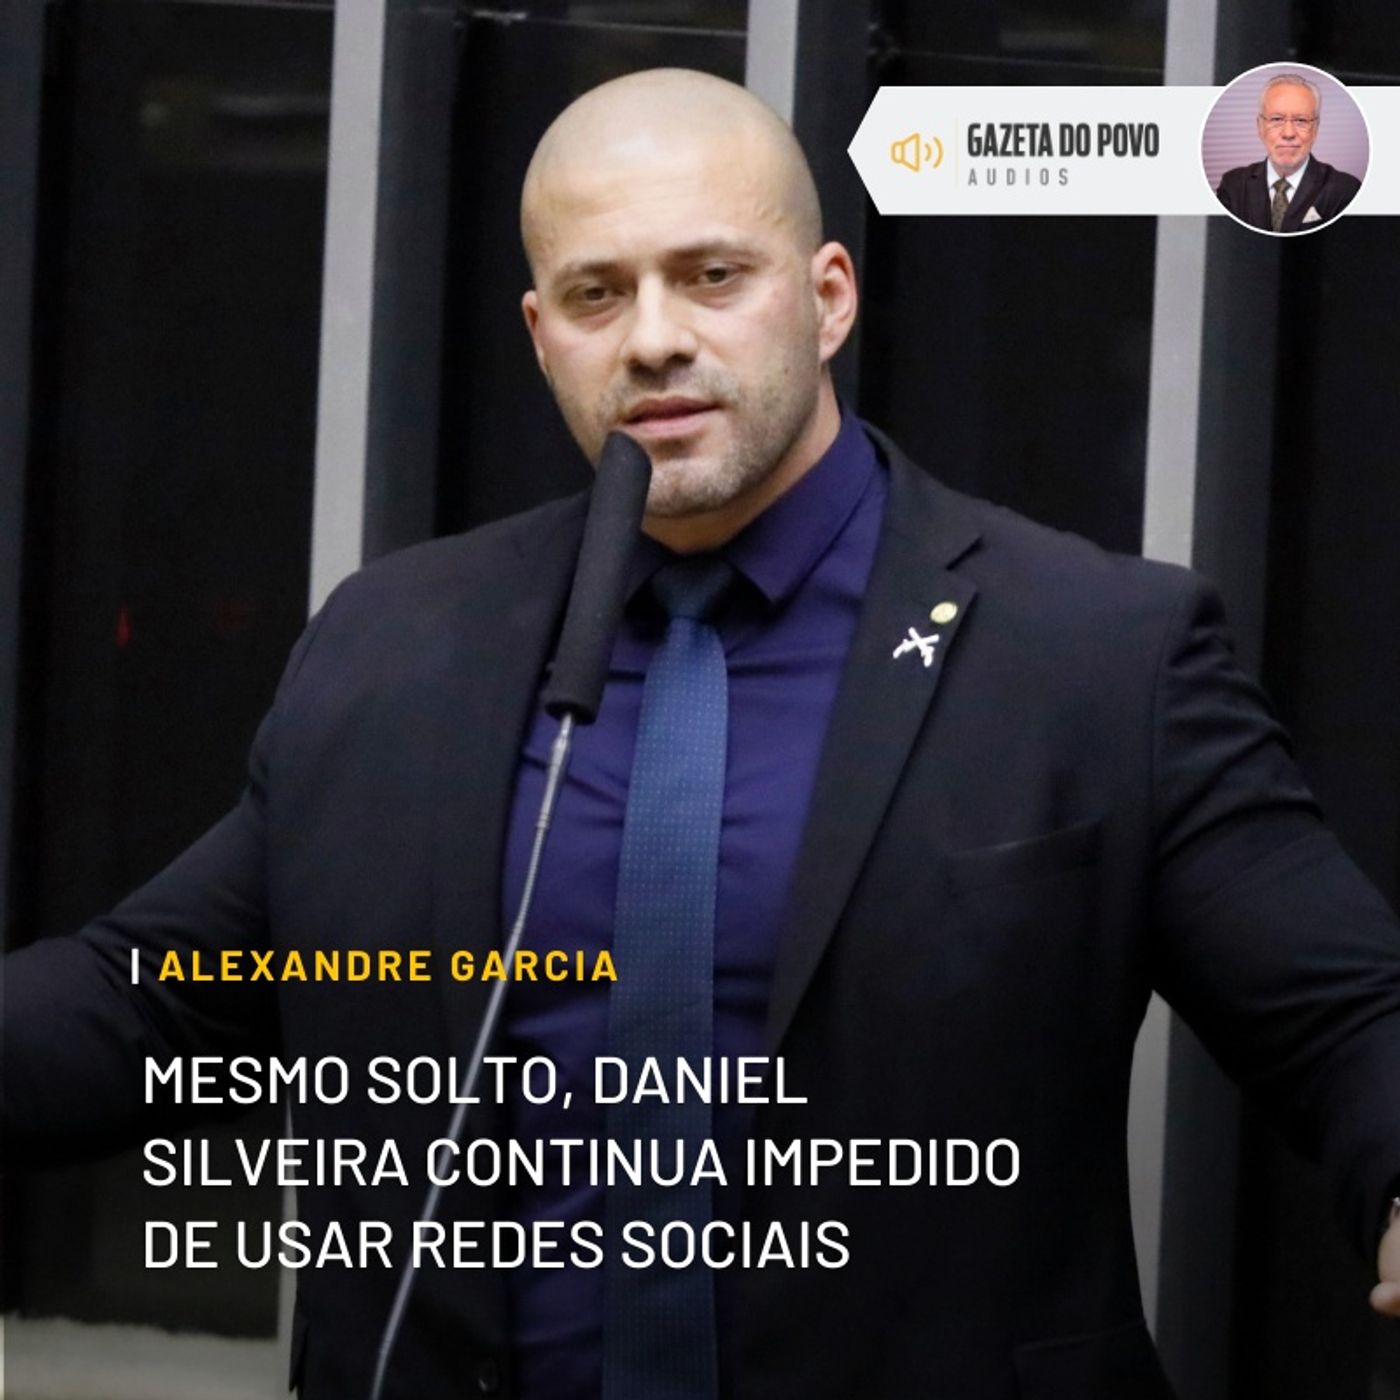 Mesmo solto, Daniel Silveira continua impedido de usar redes sociais